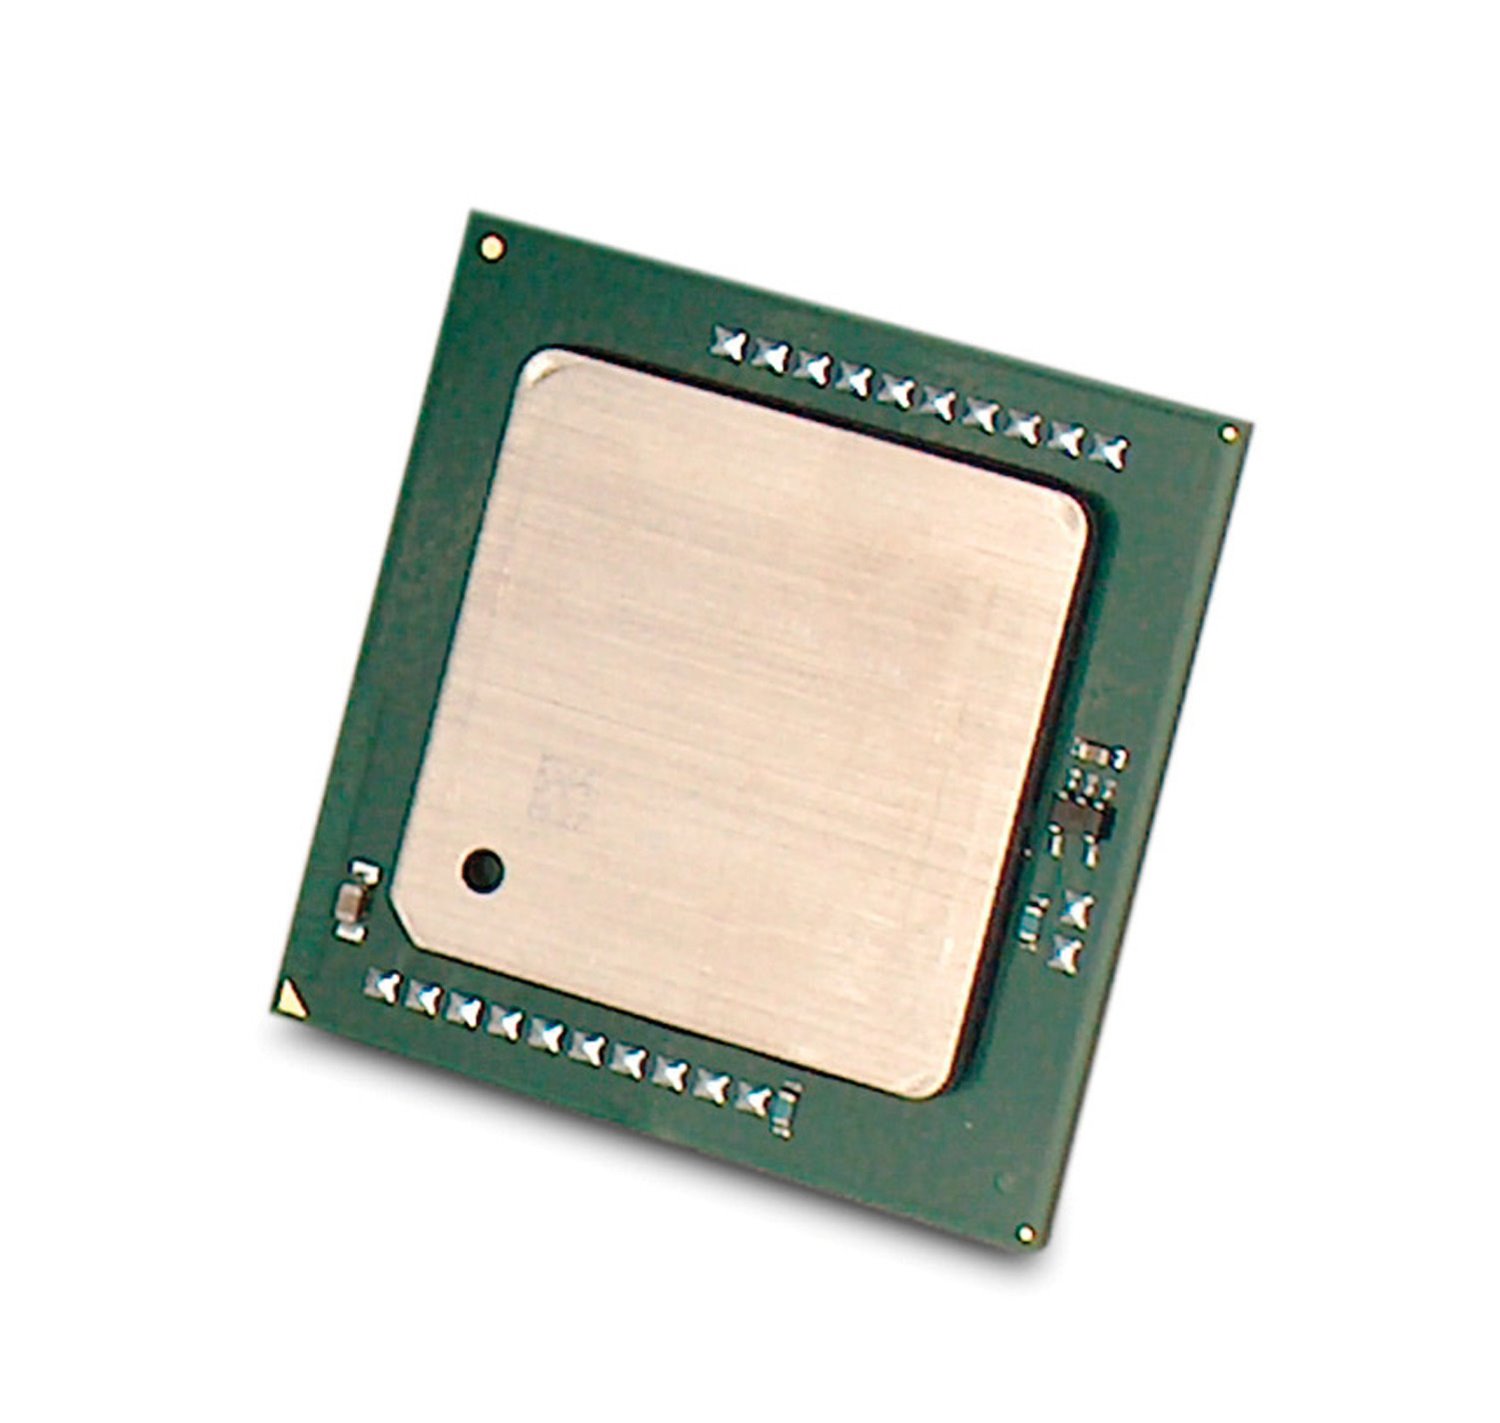 HPE-IMSourcing Intel Xeon E5-2600 E5-2690 Octa-core (8 Core) 2.90 GHz Processor Upgrade